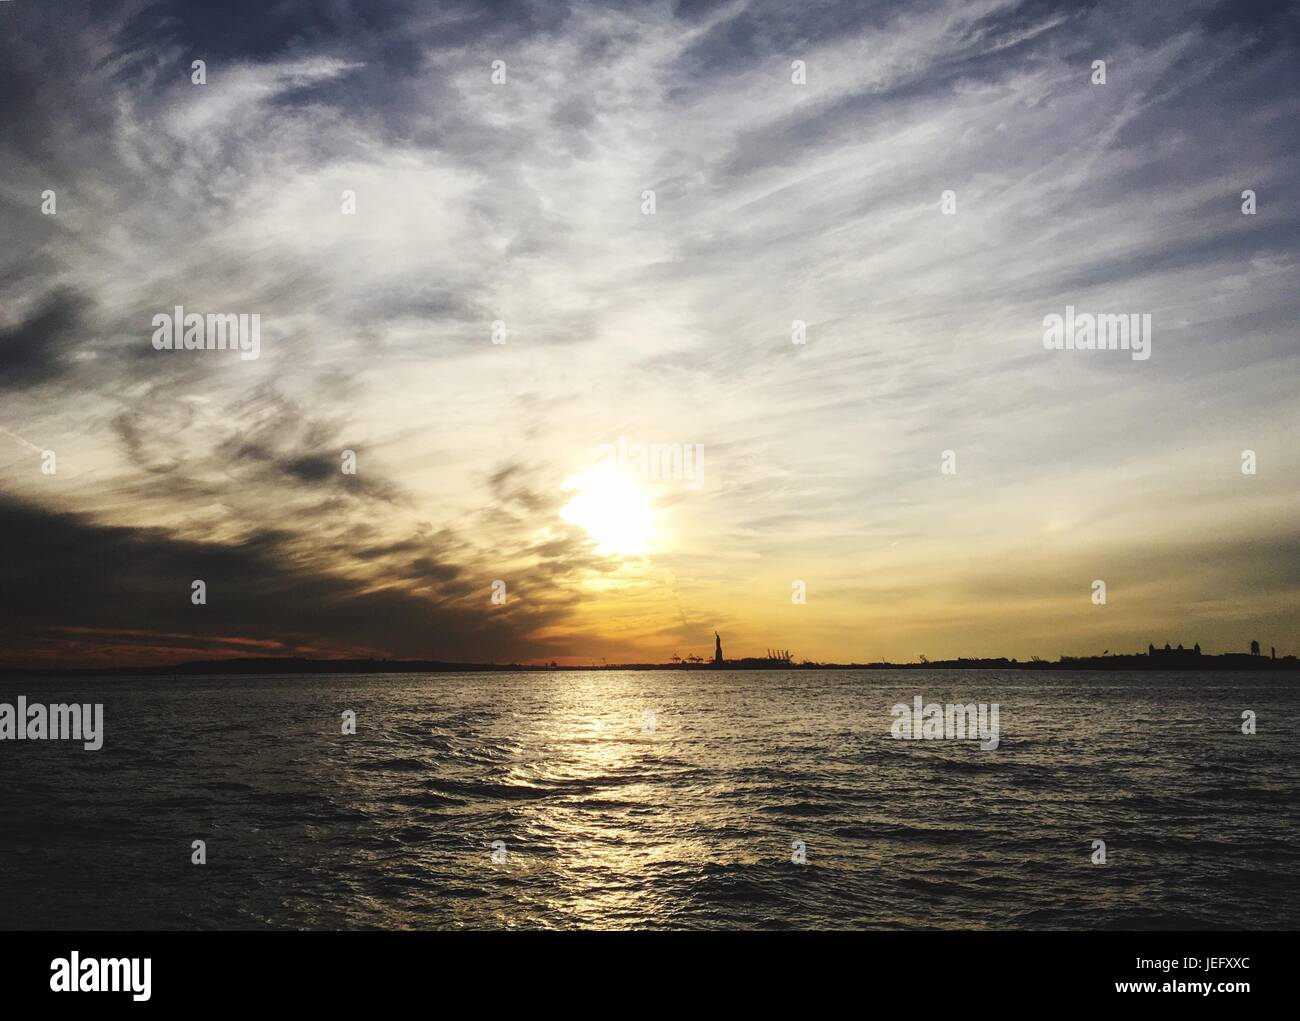 Statua della libertà su Liberty Island nel porto di New York al tramonto. Cielo spettacolare con nuvole dinamiche al tramonto. Lady Liberty in lontananza Foto Stock